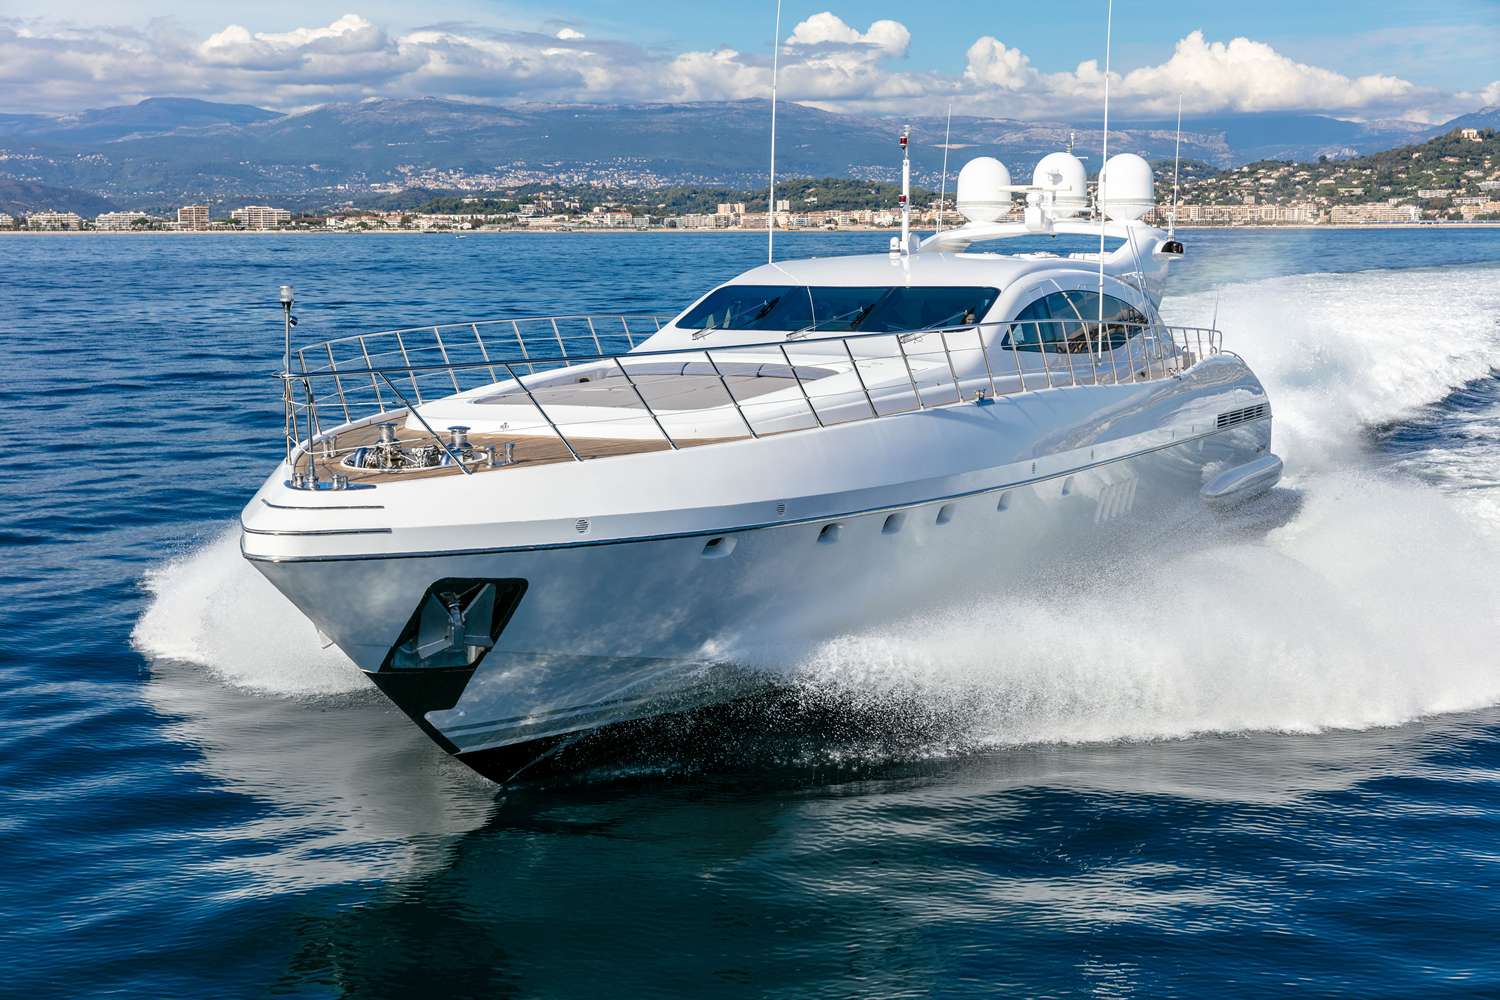 Bo - Yacht Charter Monaco & Boat hire in Fr. Riviera, Corsica & Sardinia 1